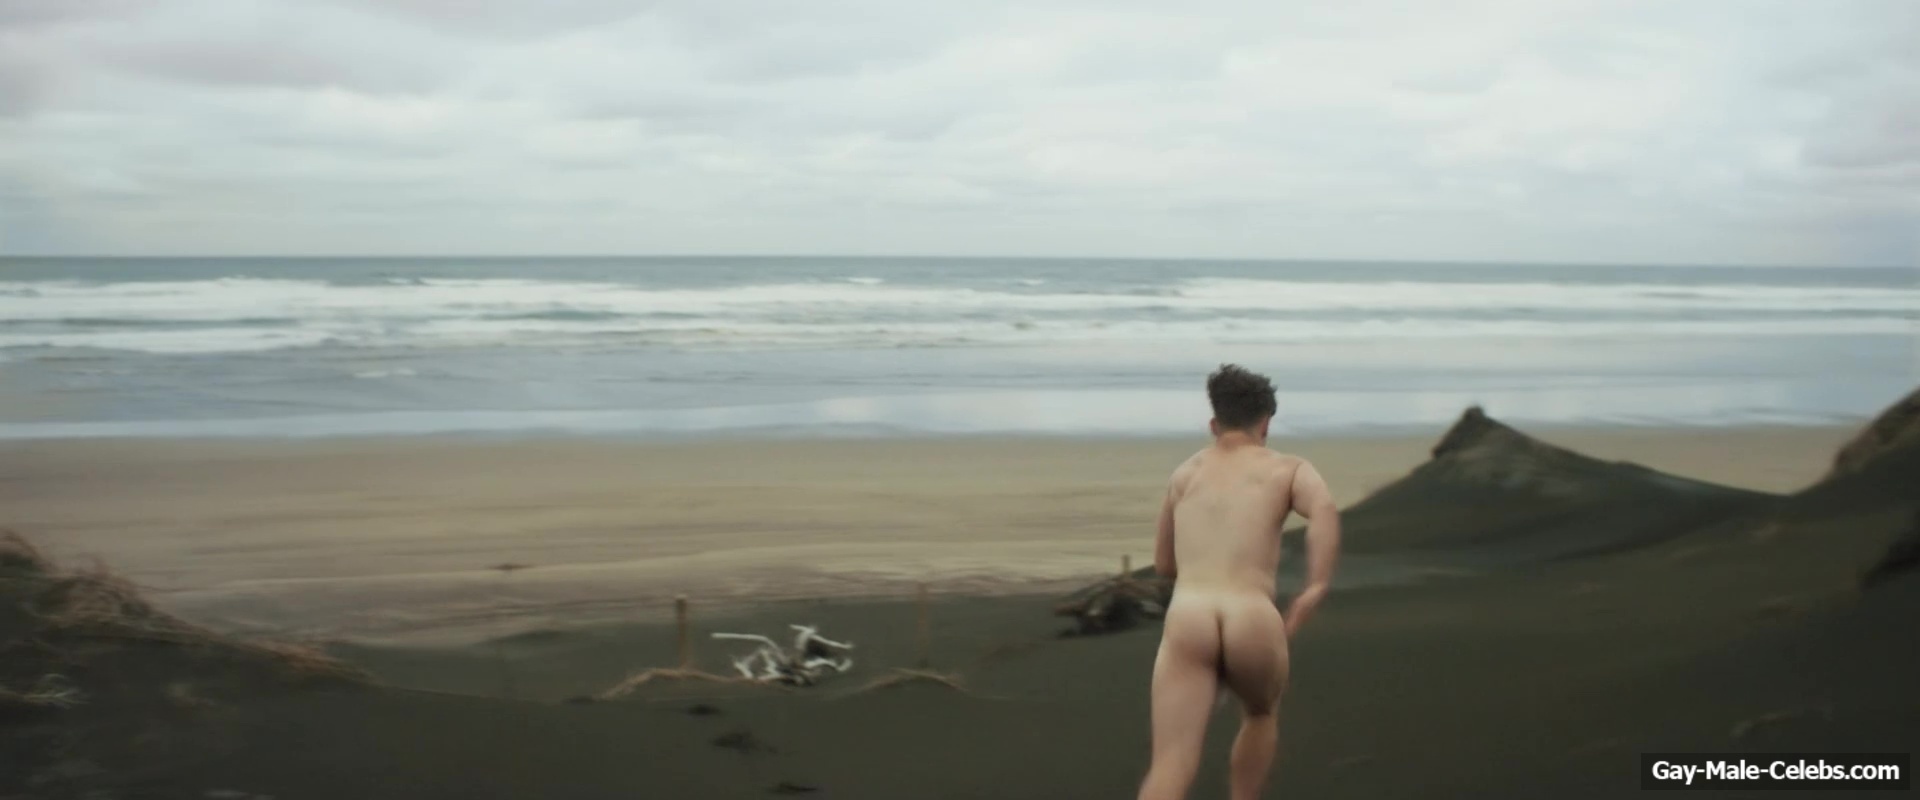 Jordan Oosterhof Nude And Gay Sex Video